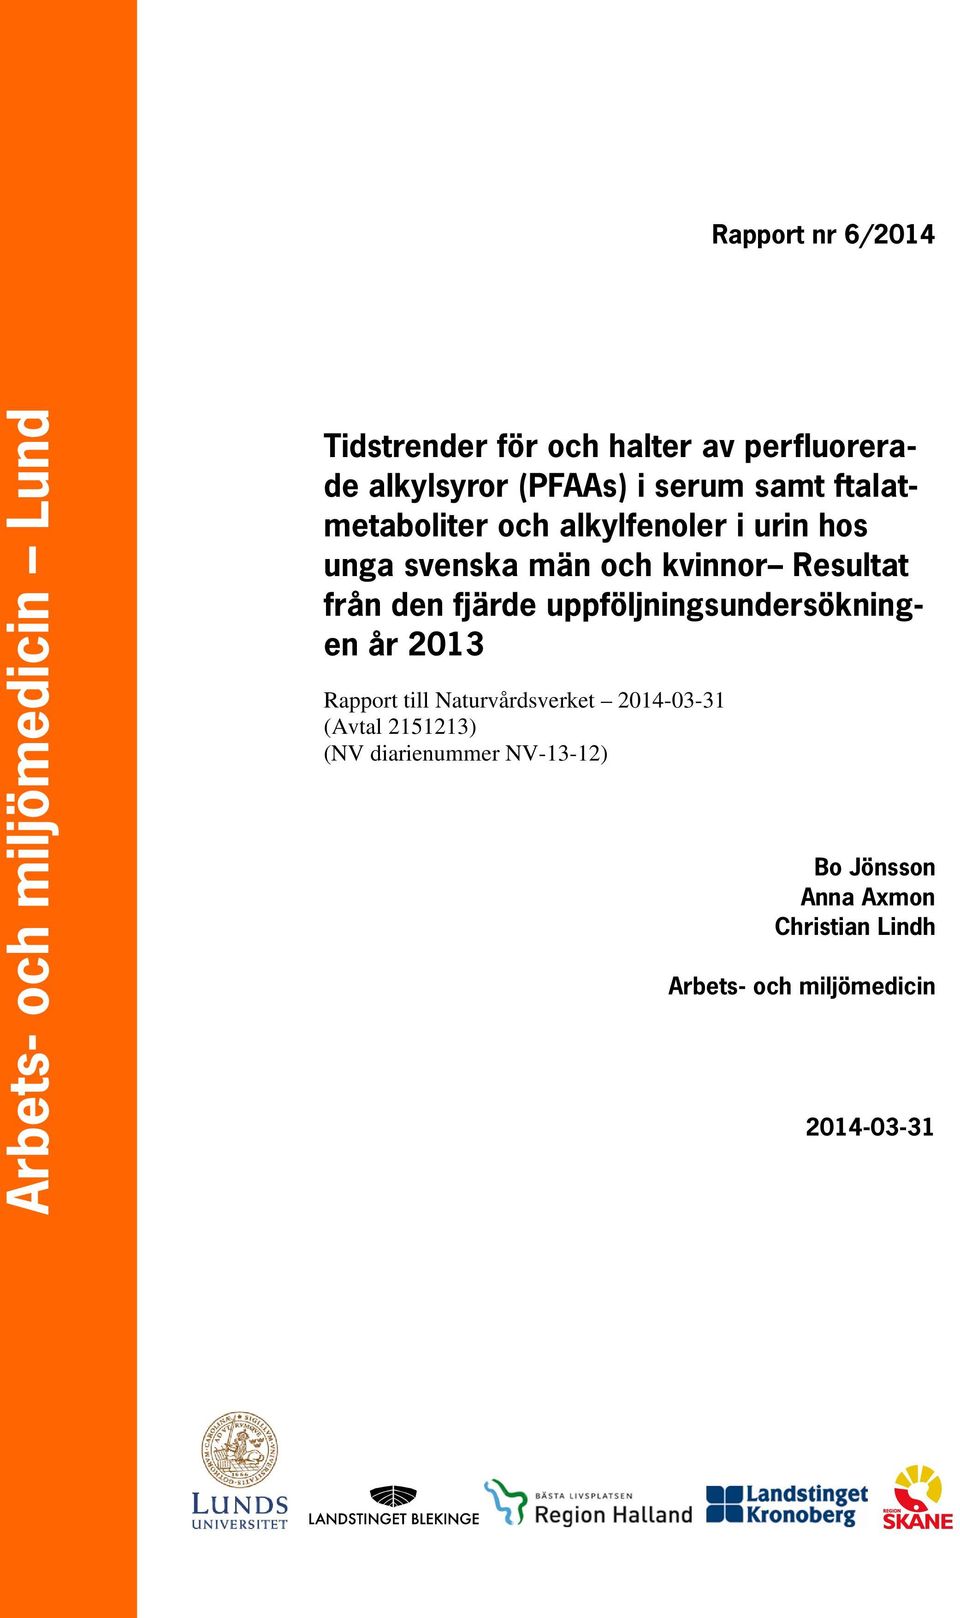 Resultat från den fjärde uppföljningsundersökningen år 2013 Rapport till Naturvårdsverket 2014-03-31